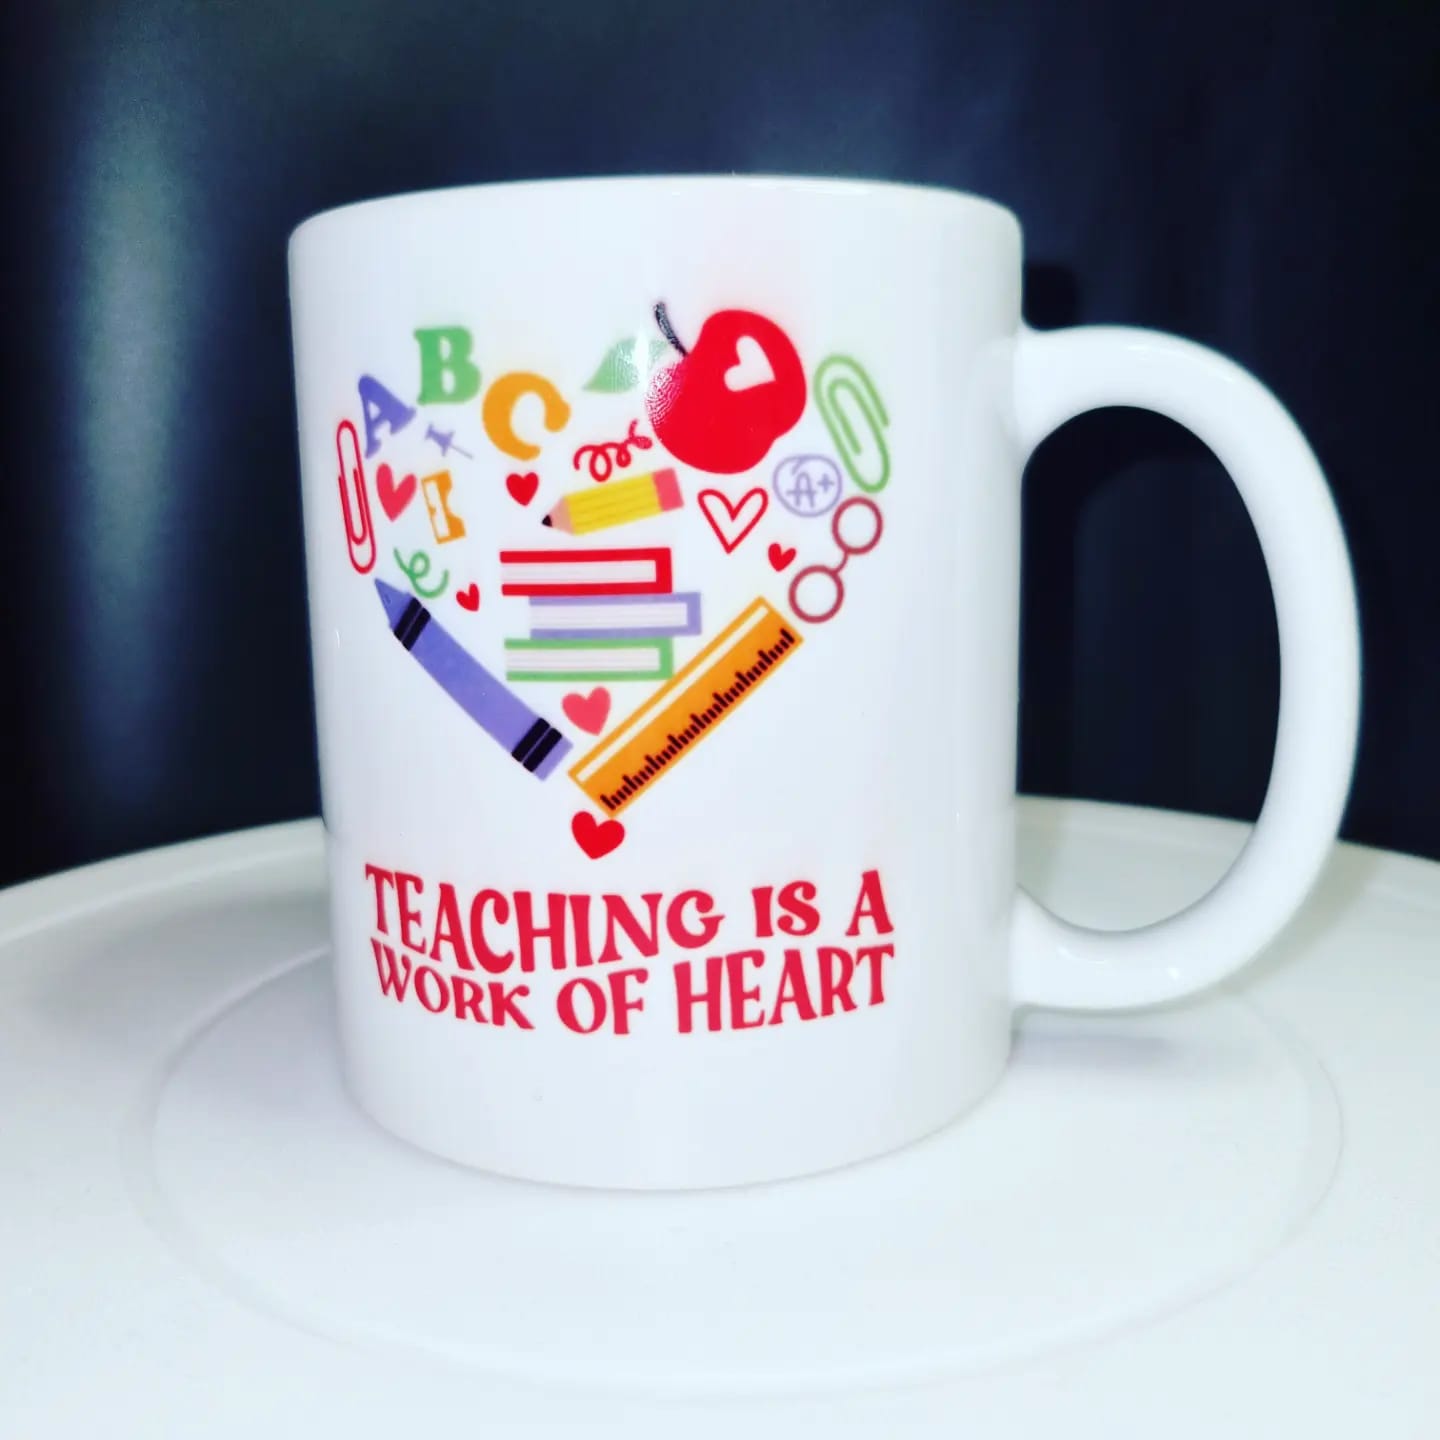 Teacher Mug (Teaching is a work of heart)